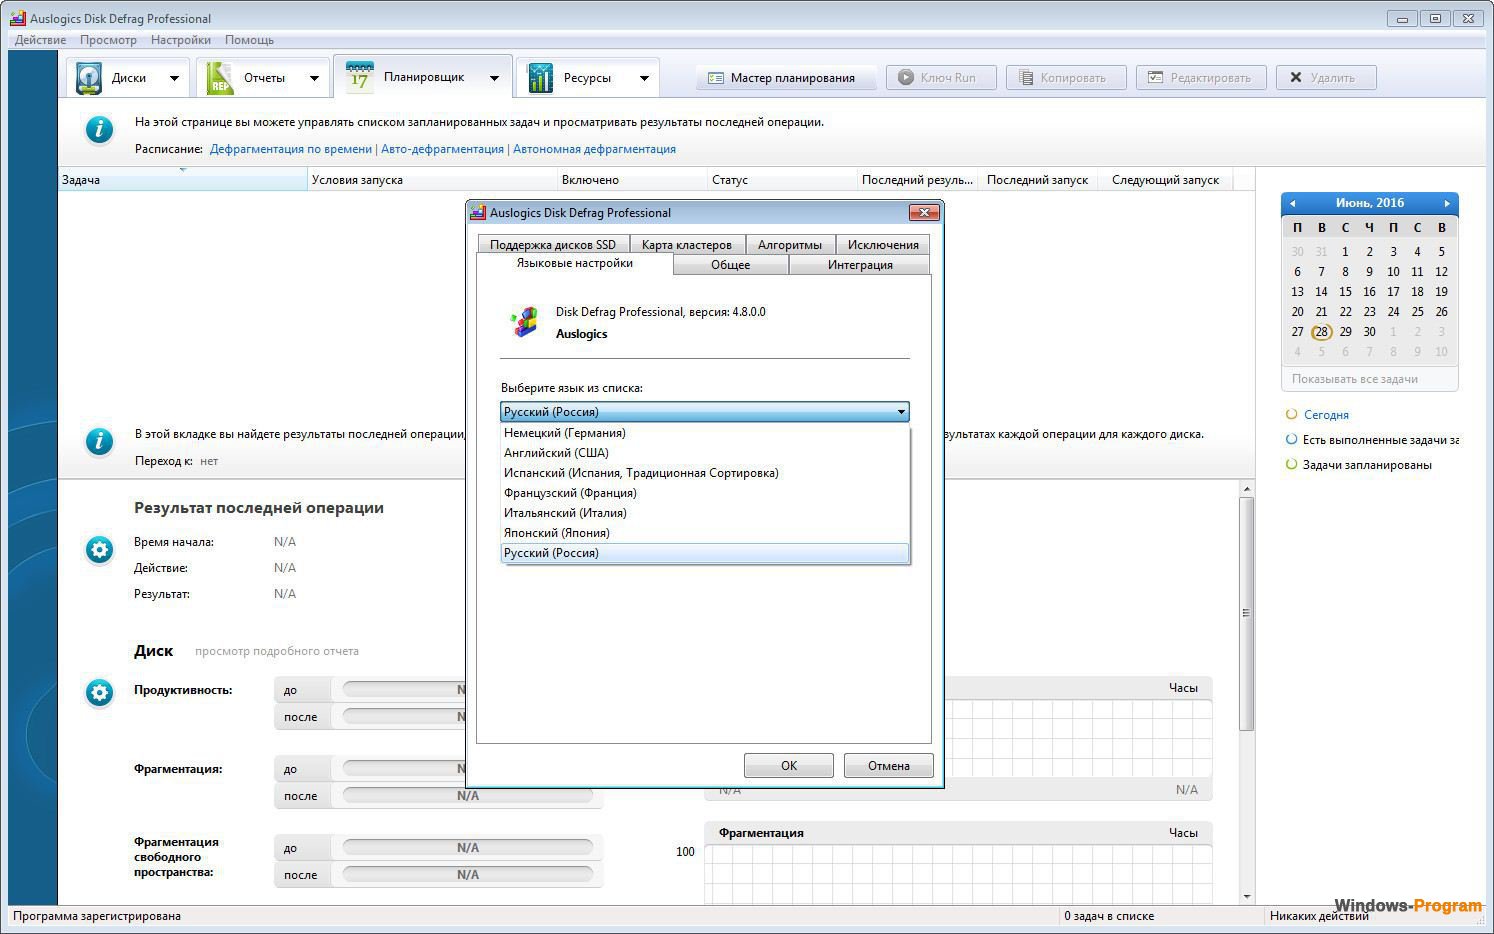 Auslogics Disk Defrag Pro 11.0.0.3 / Ultimate 4.12.0.4 for windows instal free